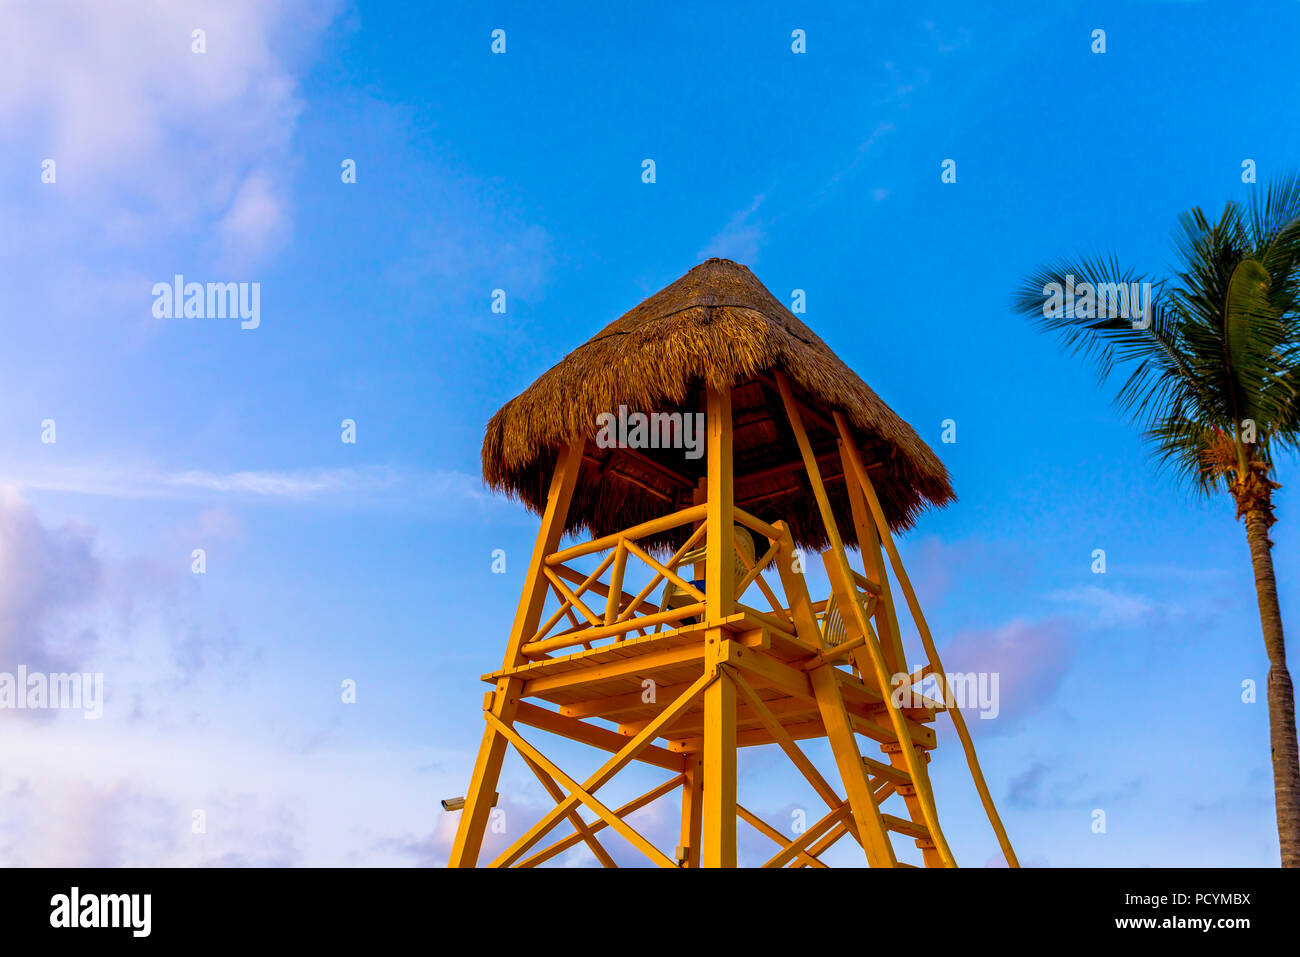 En bois et chaume jaune lifeguard tower ou la gare domine la mer des Caraïbes contre un ciel bleu tropicaux avec palmier Banque D'Images